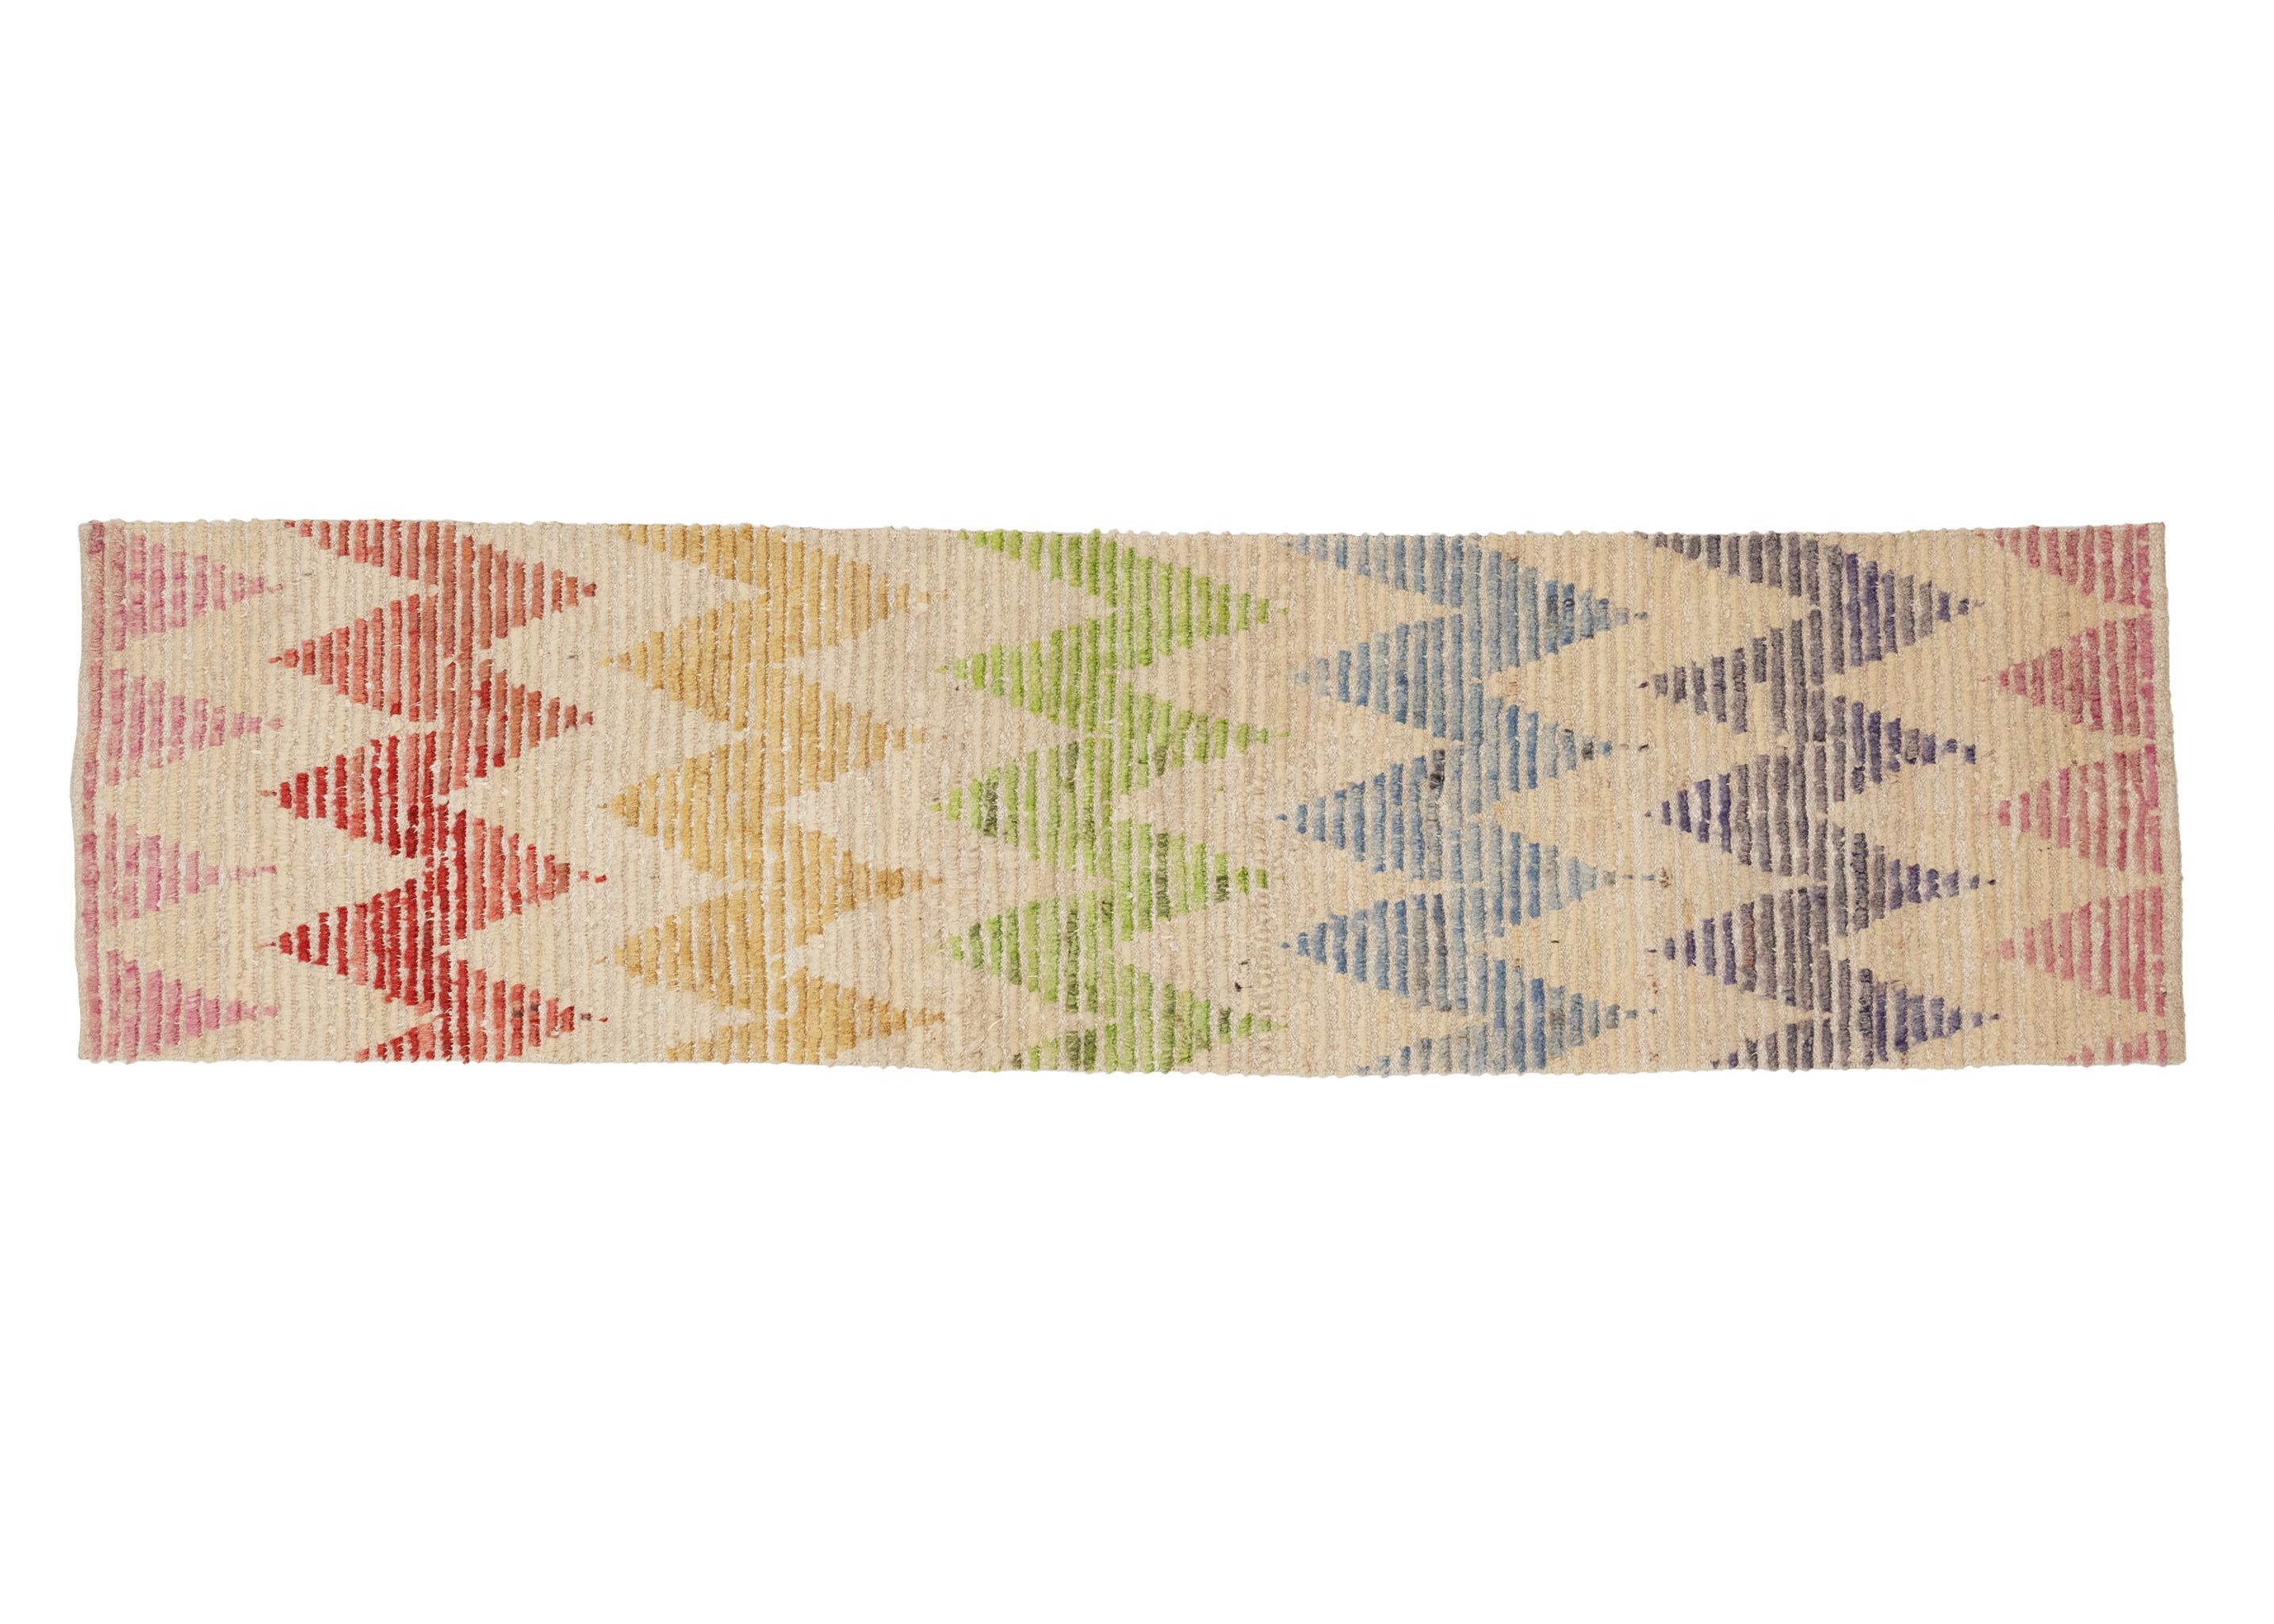 Dieser atemberaubende türkische Vintage-Teppich aus den 1950er Jahren besticht durch ein faszinierendes Zickzack-Muster in einem Regenbogen von Farben. Dieser Teppich versprüht Retro-Charme und verleiht jedem Raum einen lebendigen und fröhlichen